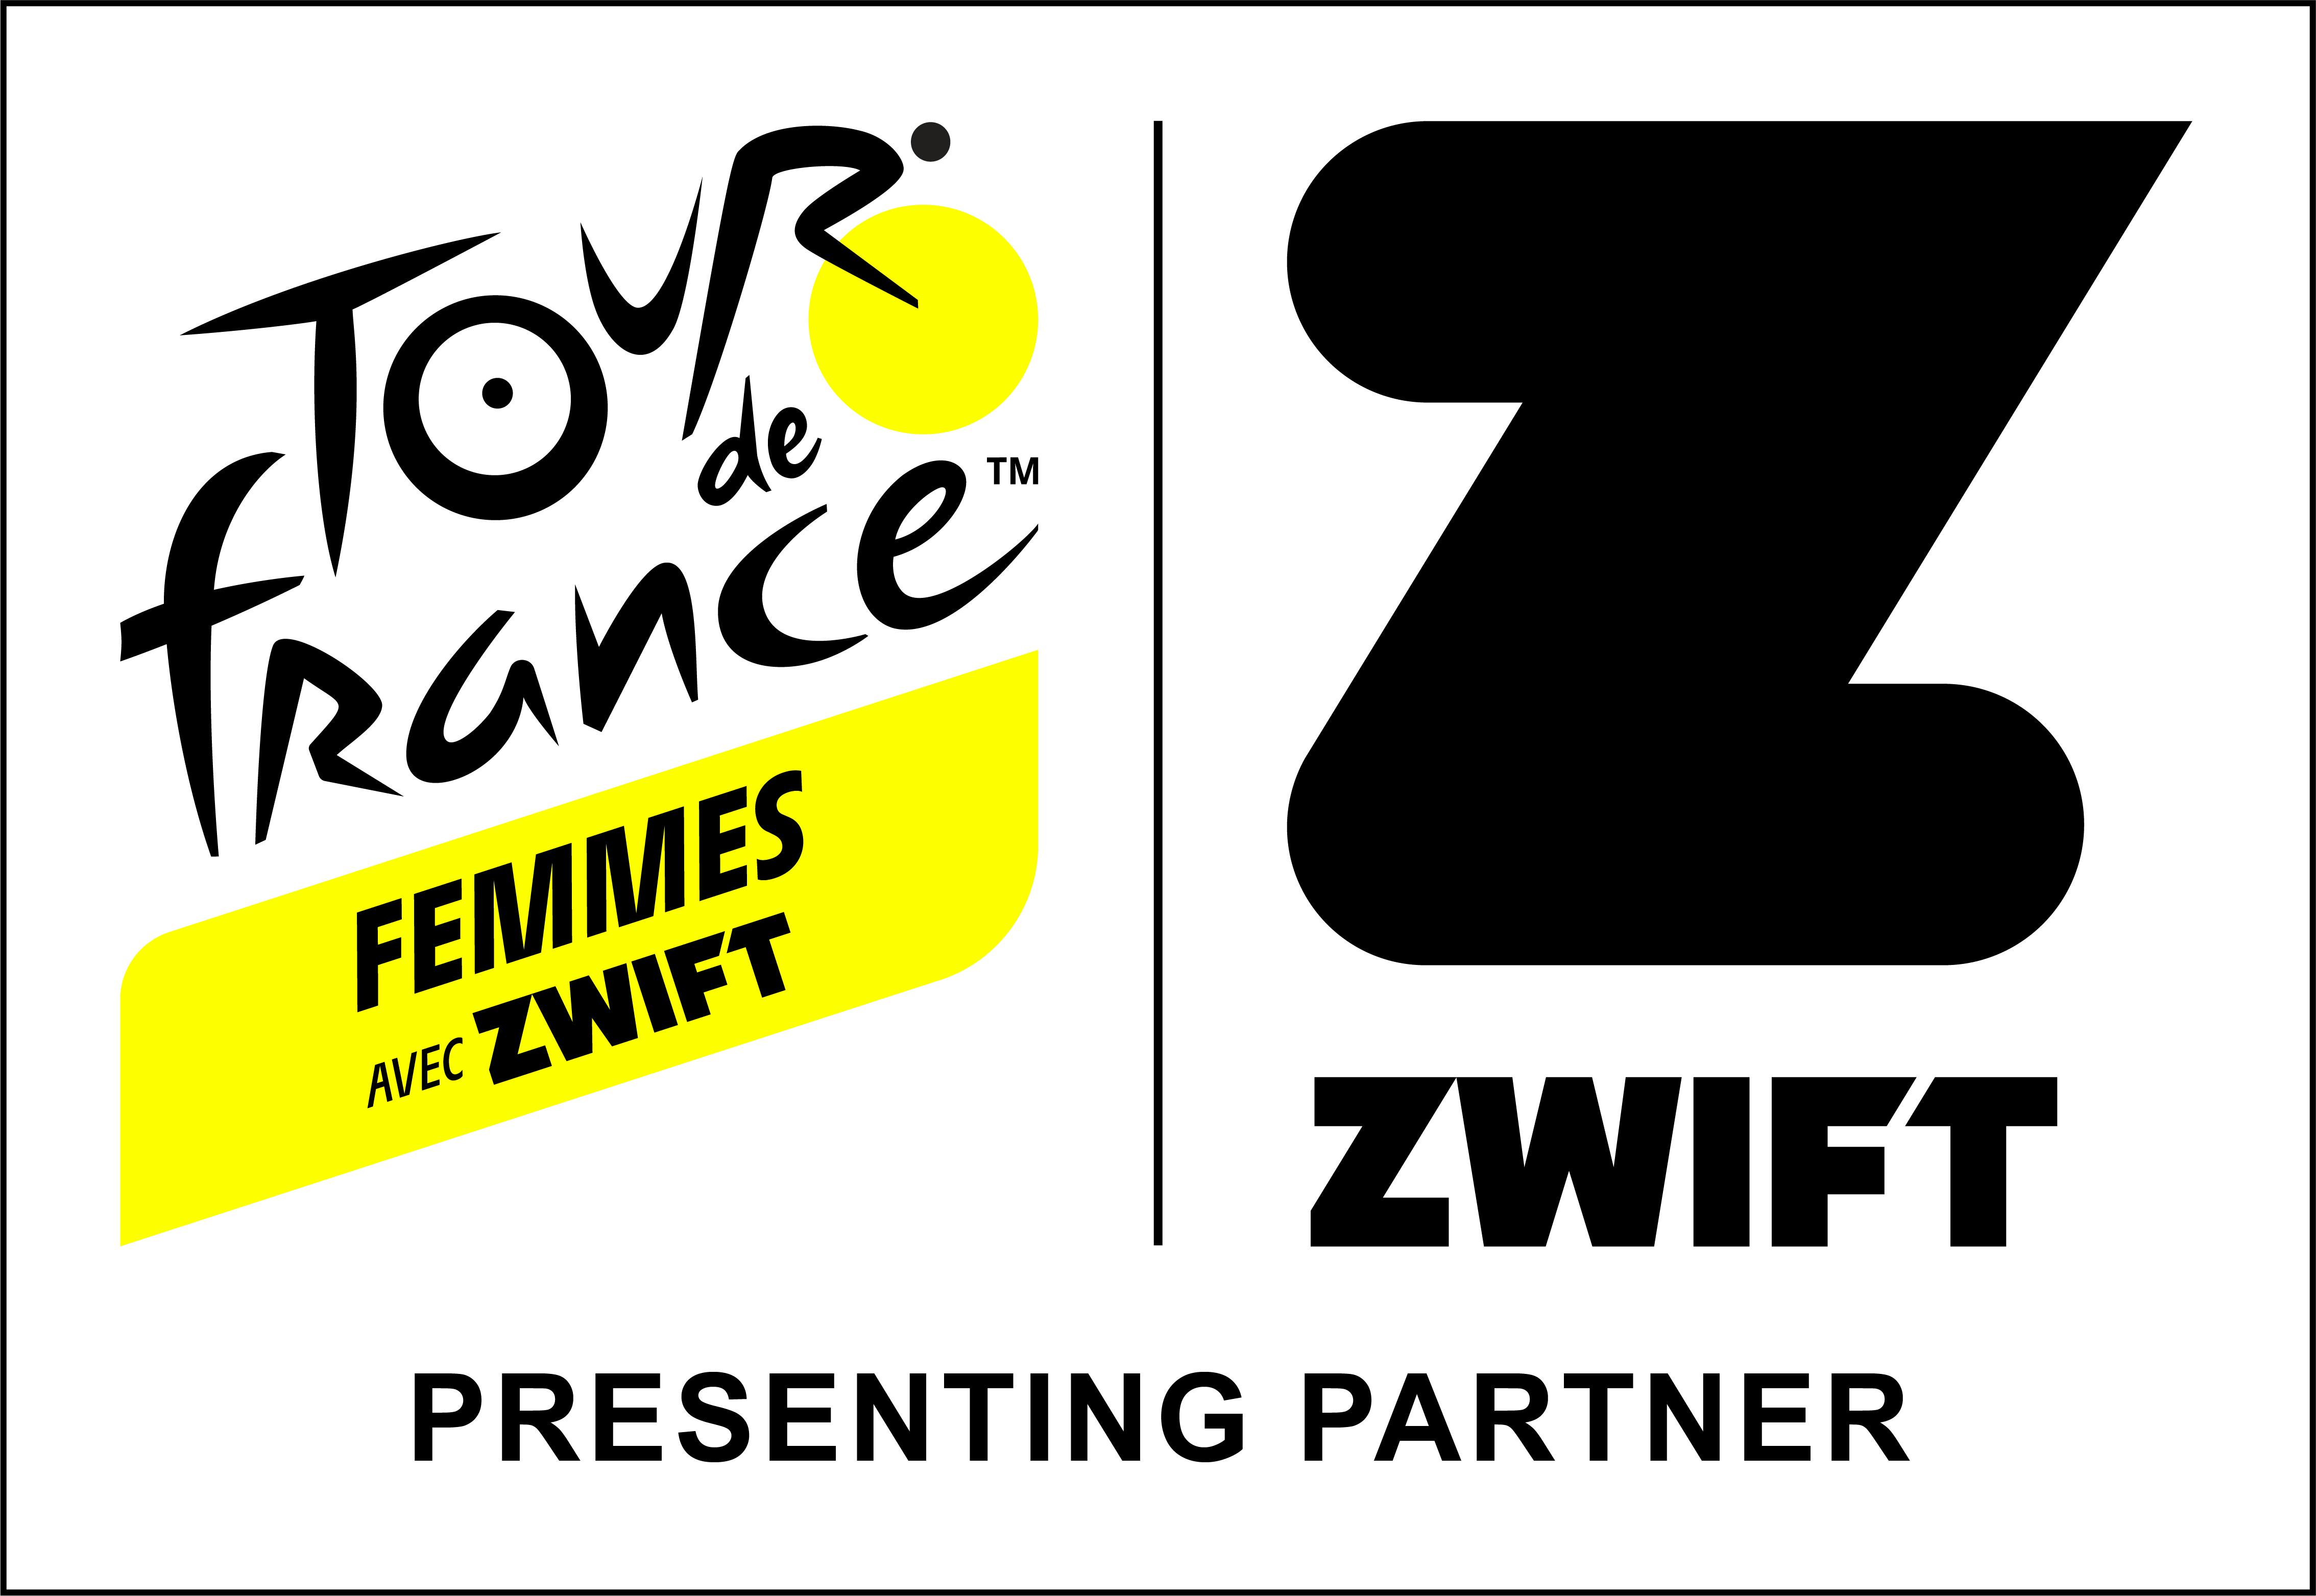 ABOUT THE TOUR DE FRANCE FEMMES AVEC ZWIFT